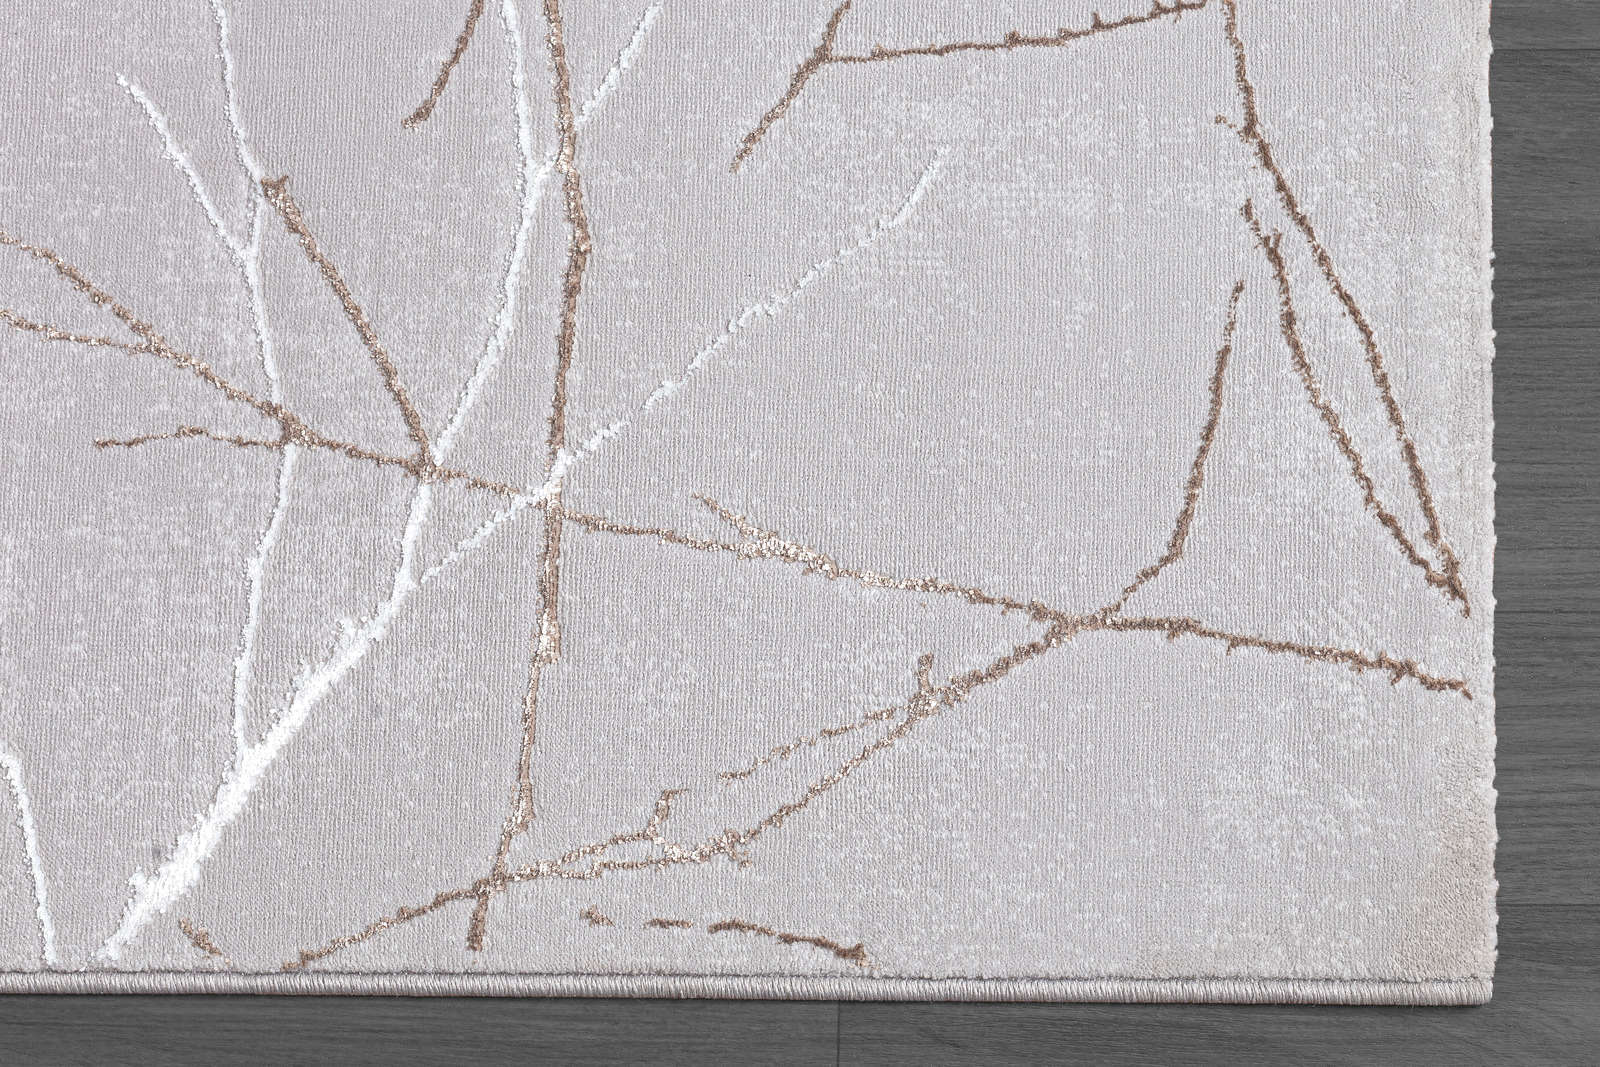             Hoogpolig tapijt met patroon in grijs - 150 x 80 cm
        